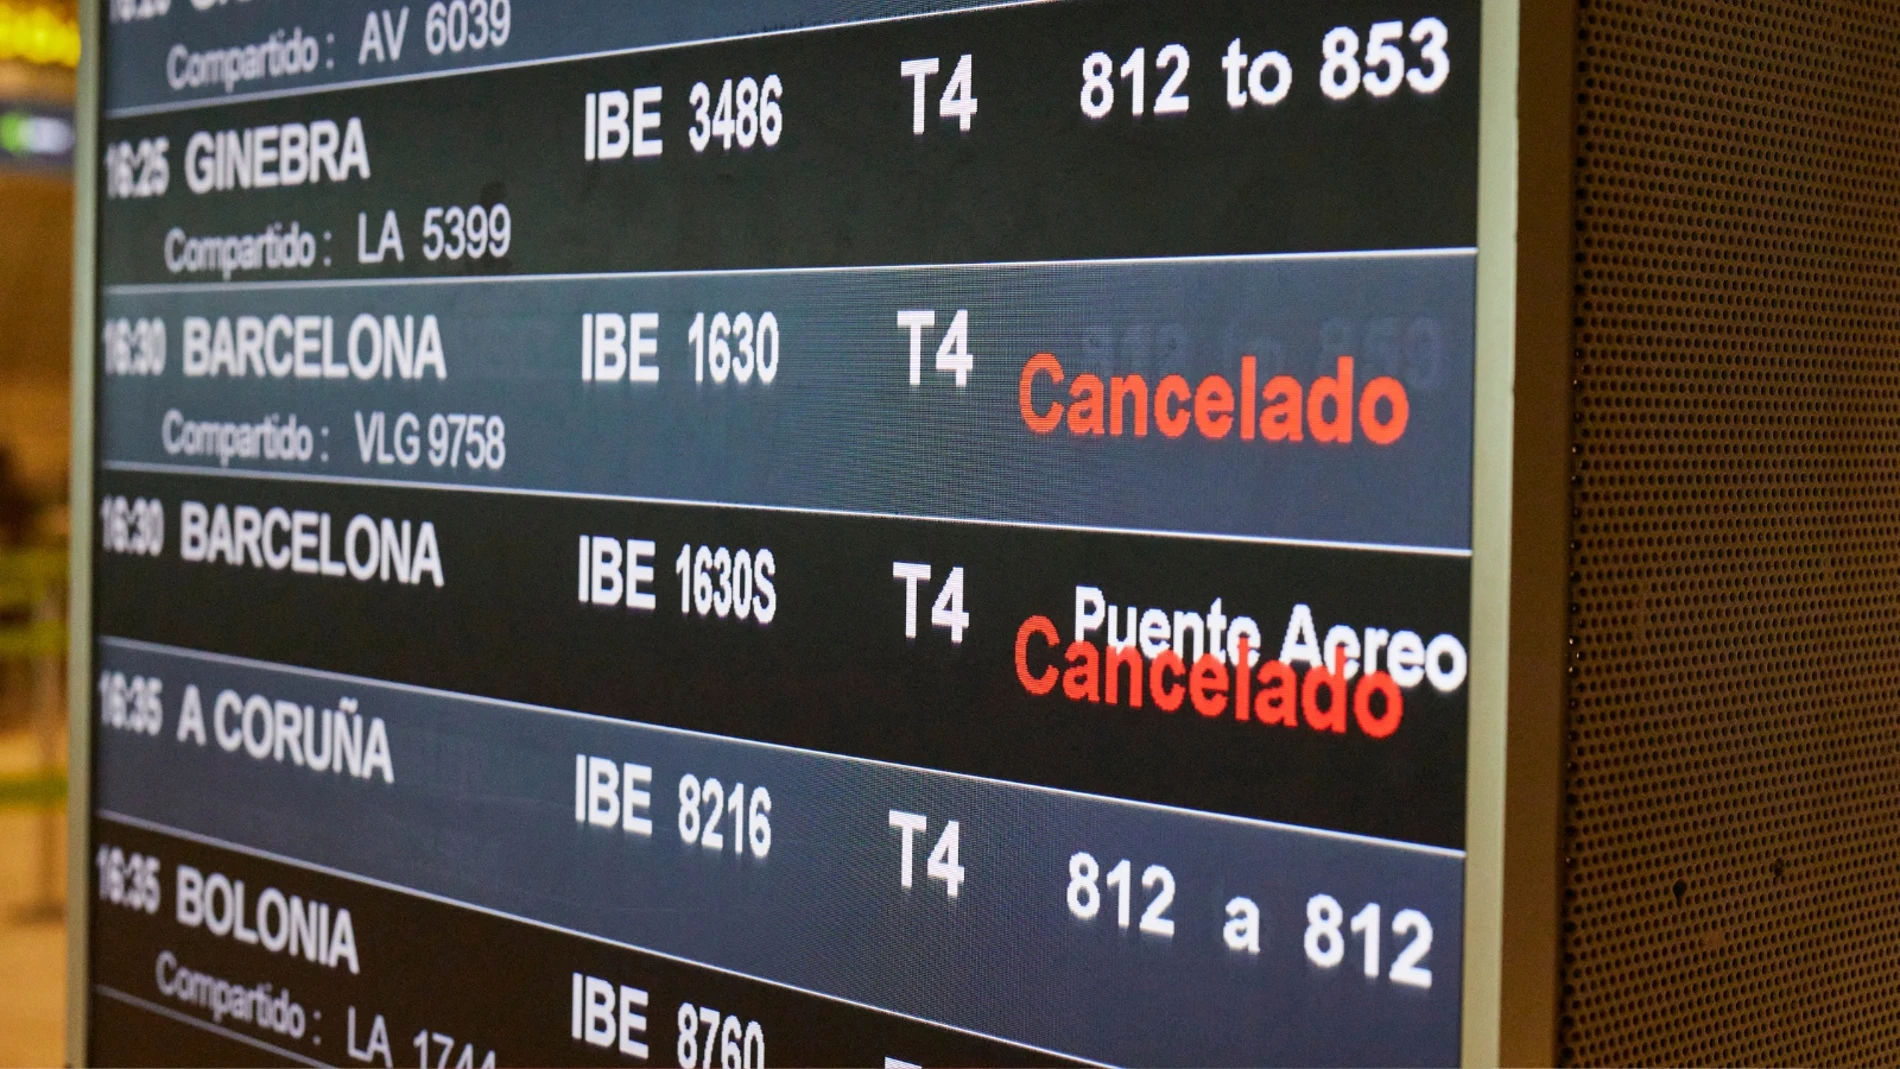 Dos vuelos cancelados en una pantalla de un aeropuerto español